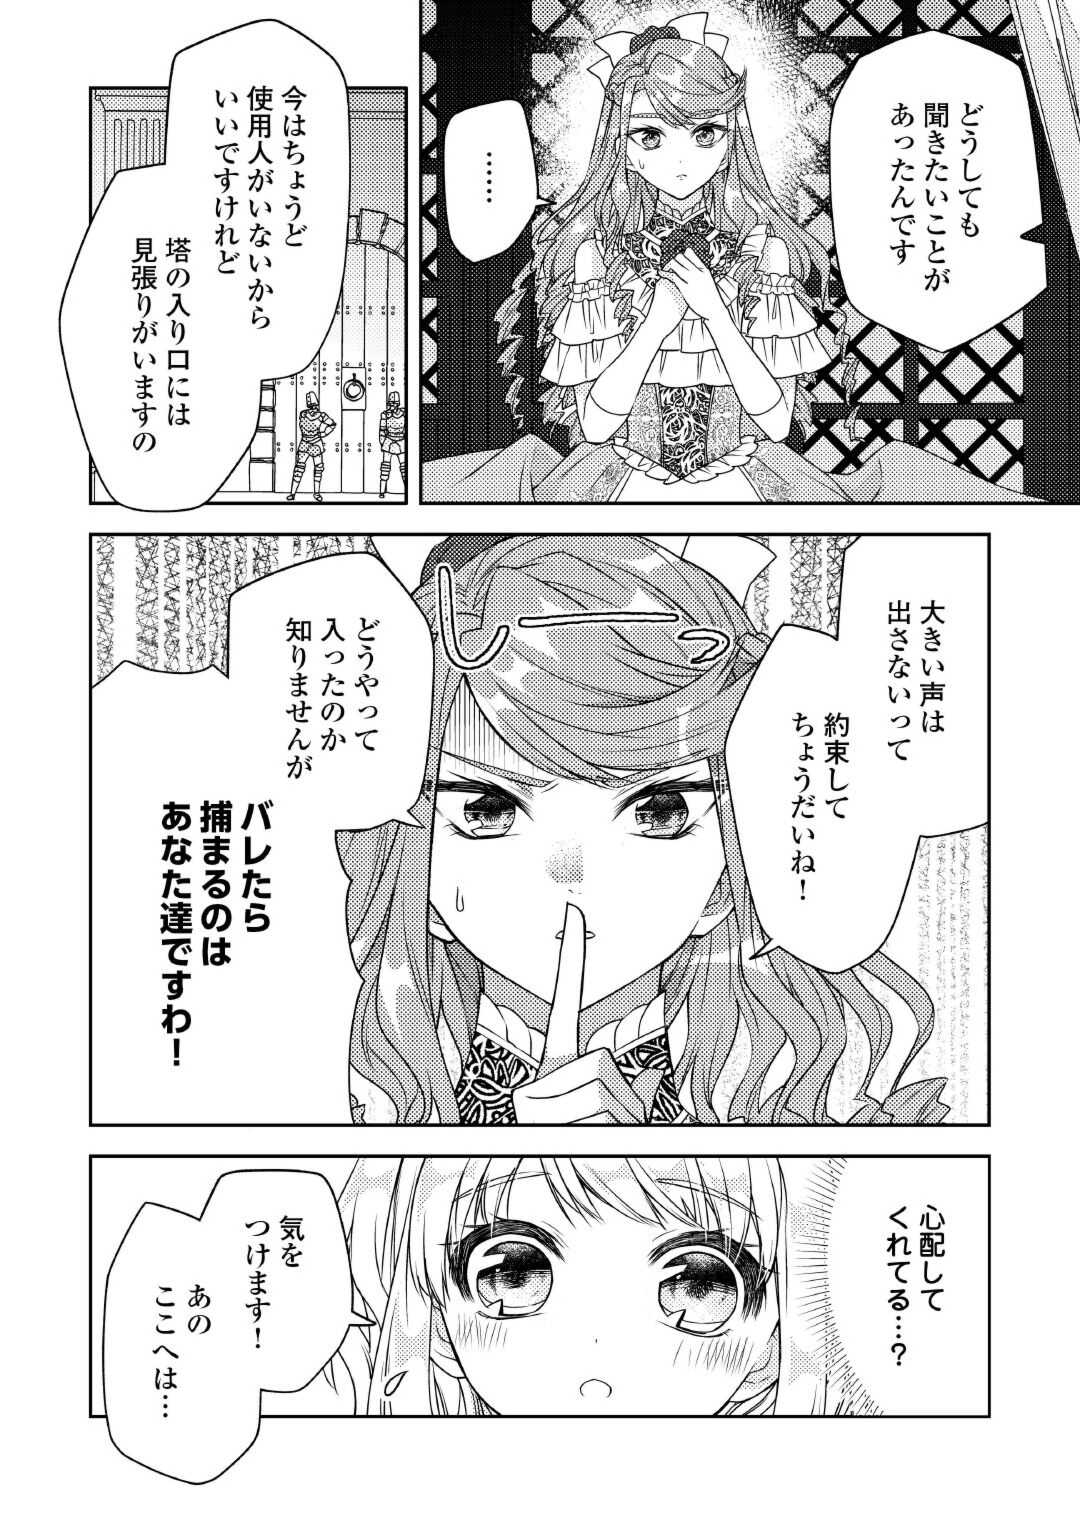 Toaru Chisana Mura No Chi Tona Tanya Ya San - Chapter 18 - Page 2